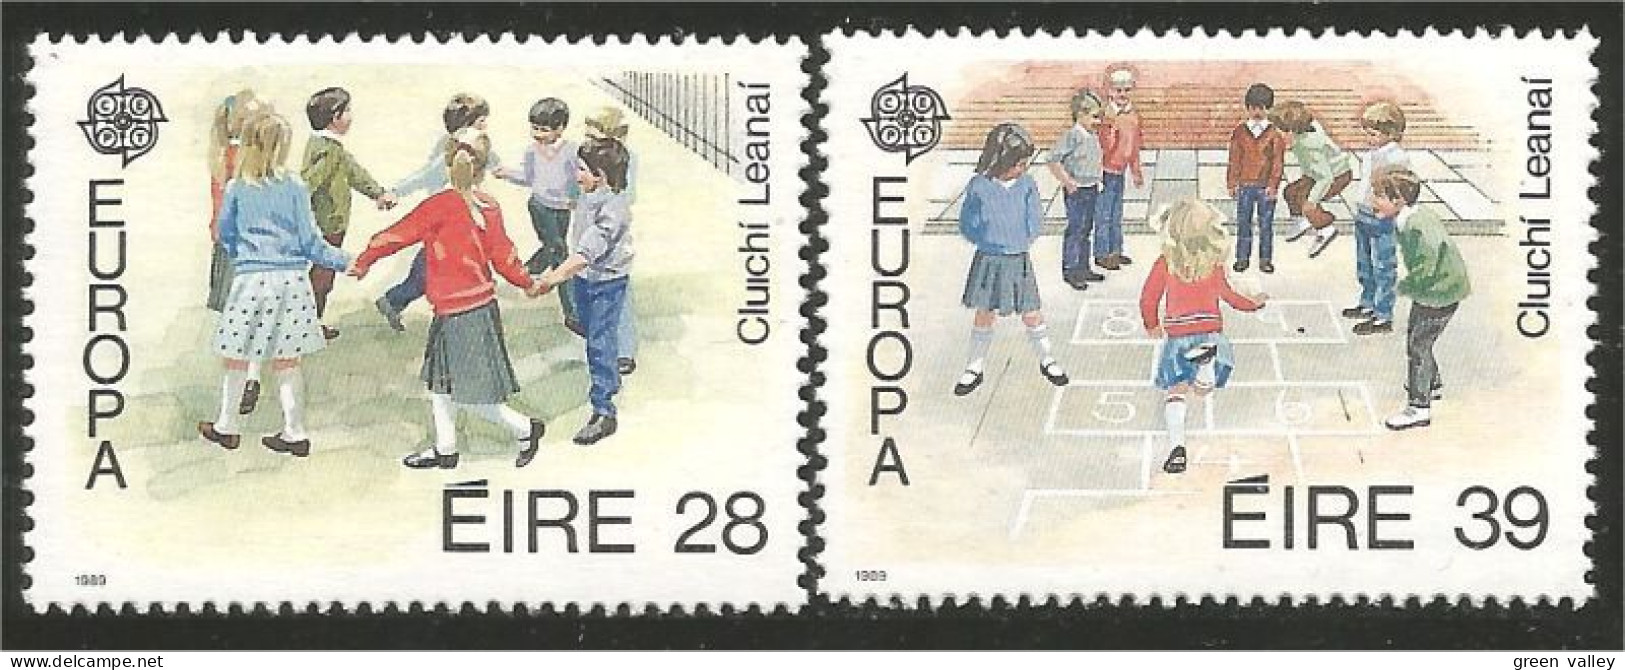 EU89-5b EUROPA-CEPT 1989 Irlande Jeux Enfants Children Games Kinderspiele MNH ** Neuf SC - Ohne Zuordnung